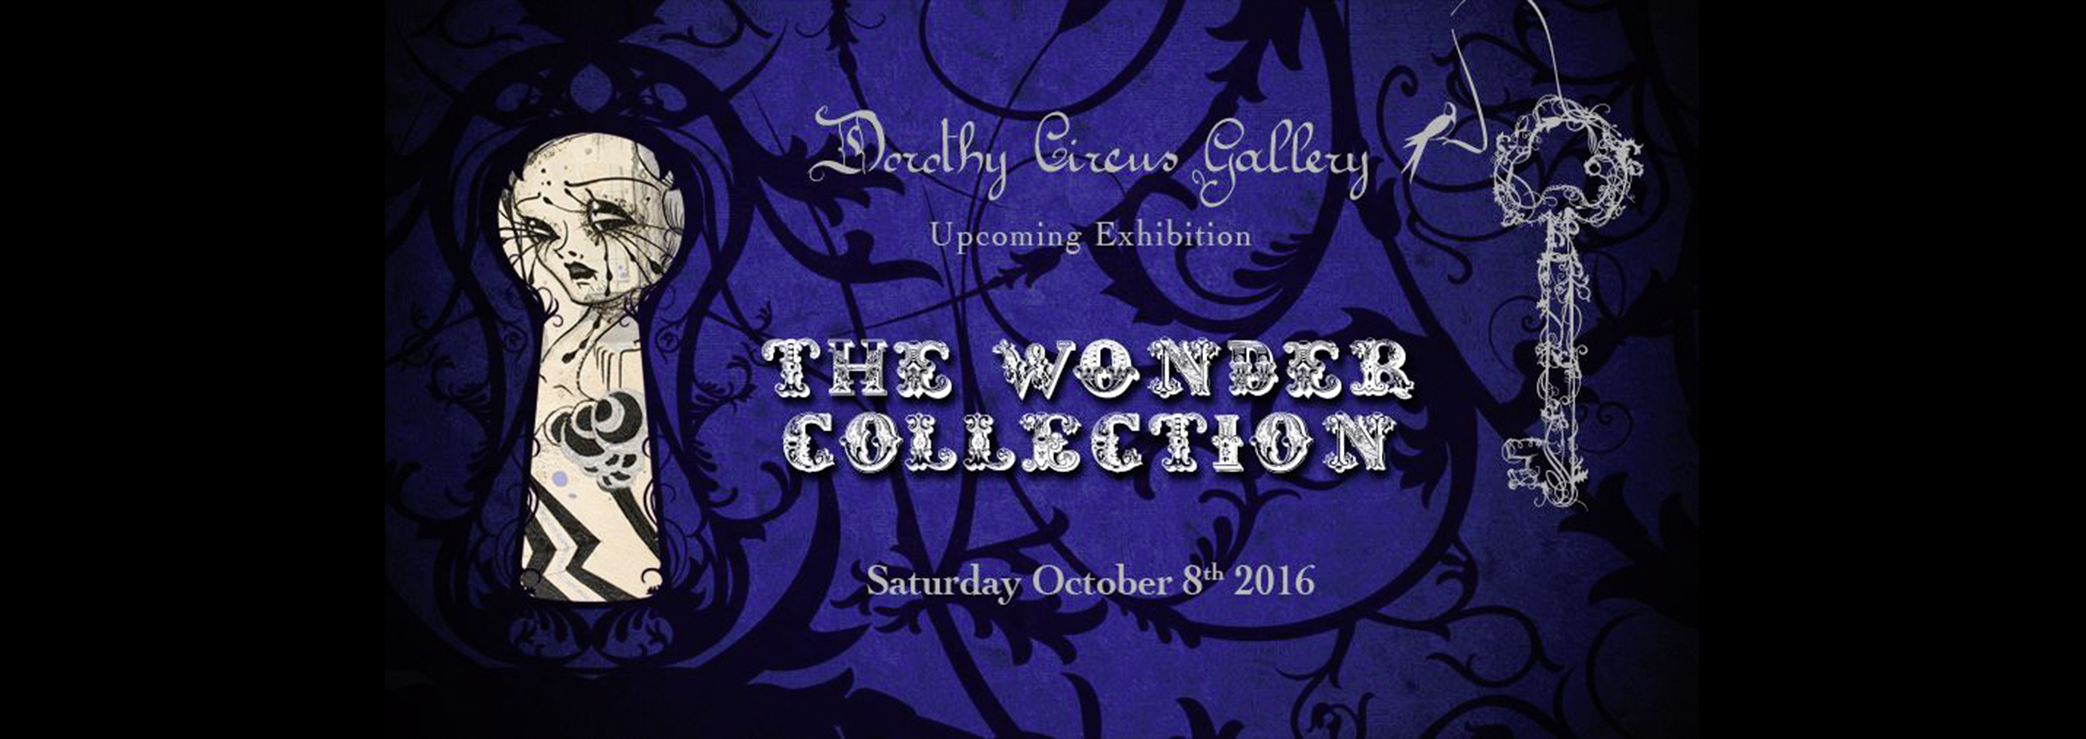 Dorothy Circus Gallery: i grandi del pop surrelismo nella stagione 2016/2017